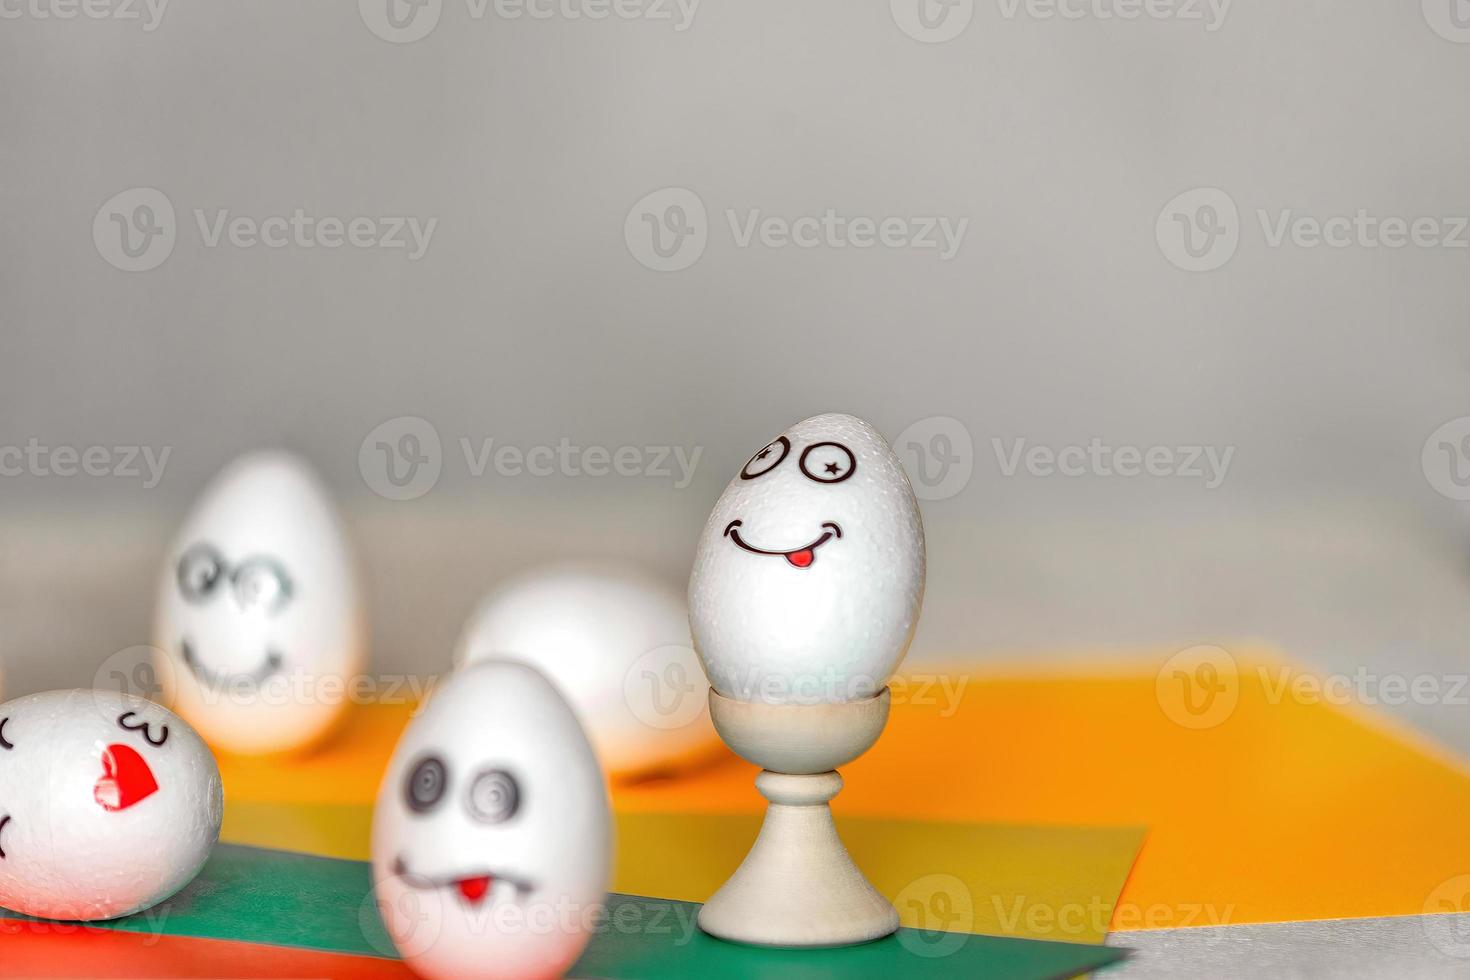 se pegan pegatinas con diferentes emociones en huevos blancos, espacio de copia .el concepto de comunicación y emociones en las redes sociales, decoración inusual de huevos de Pascua foto